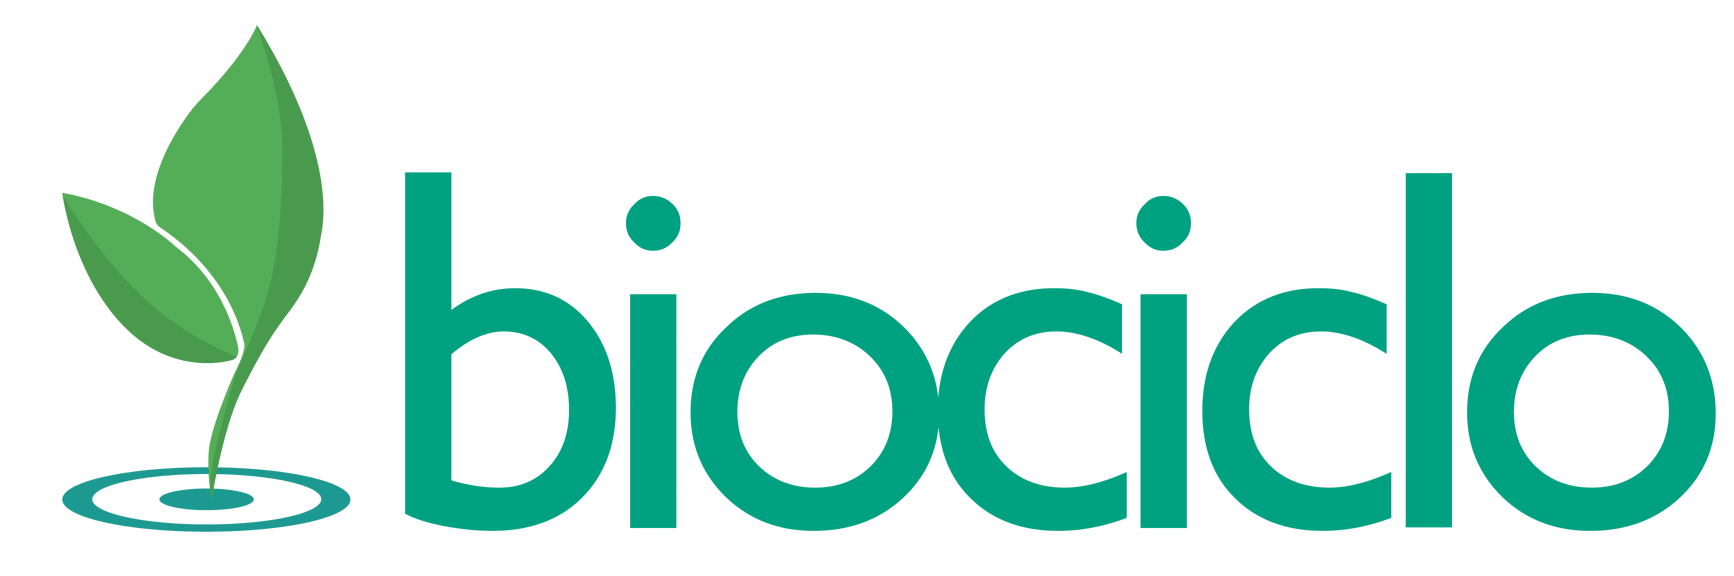 logo_biociclo